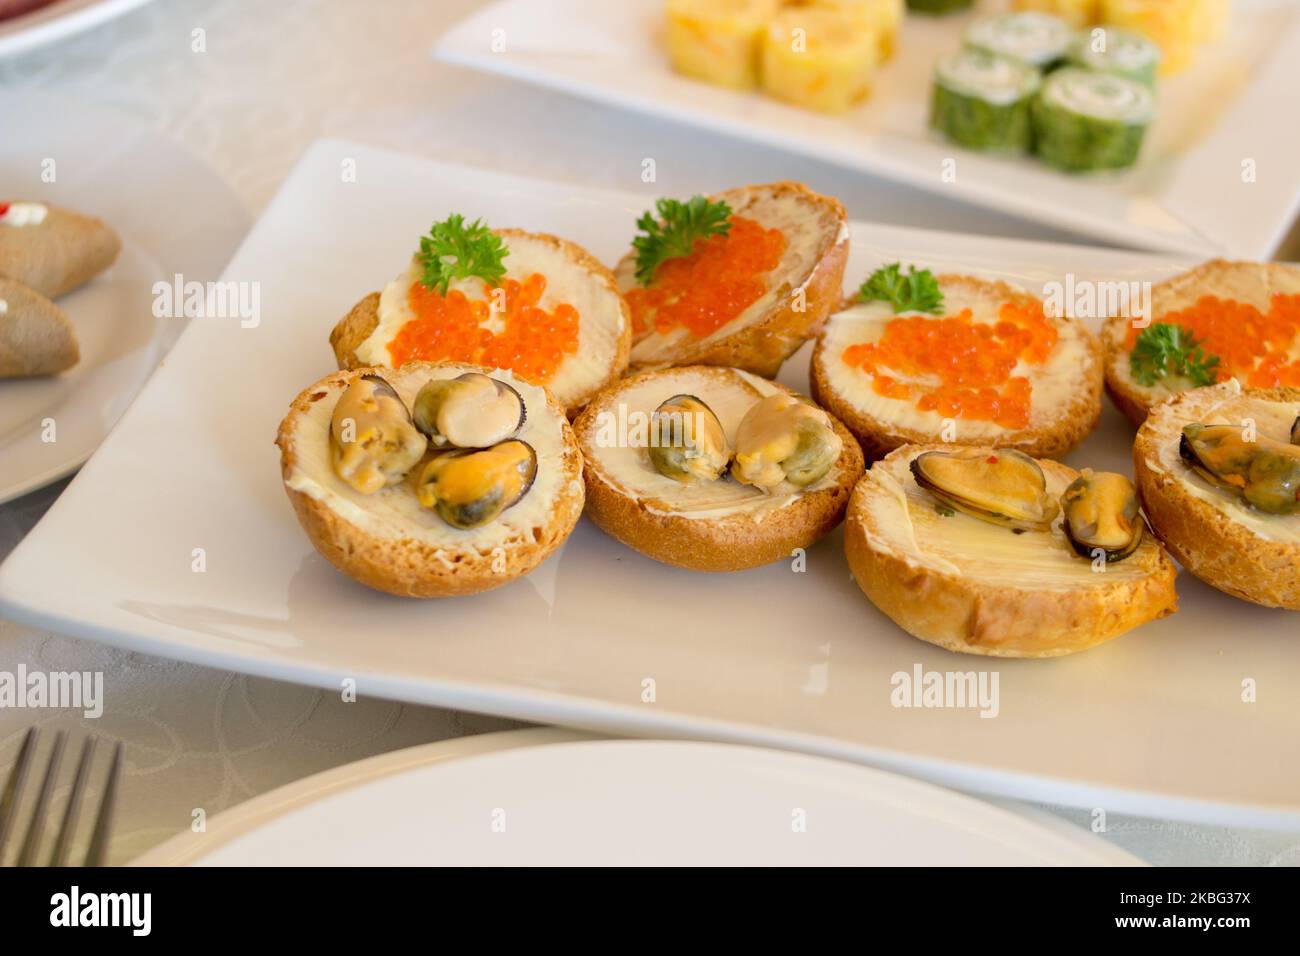 sandwiches avec moules et caviar sur la table Banque D'Images